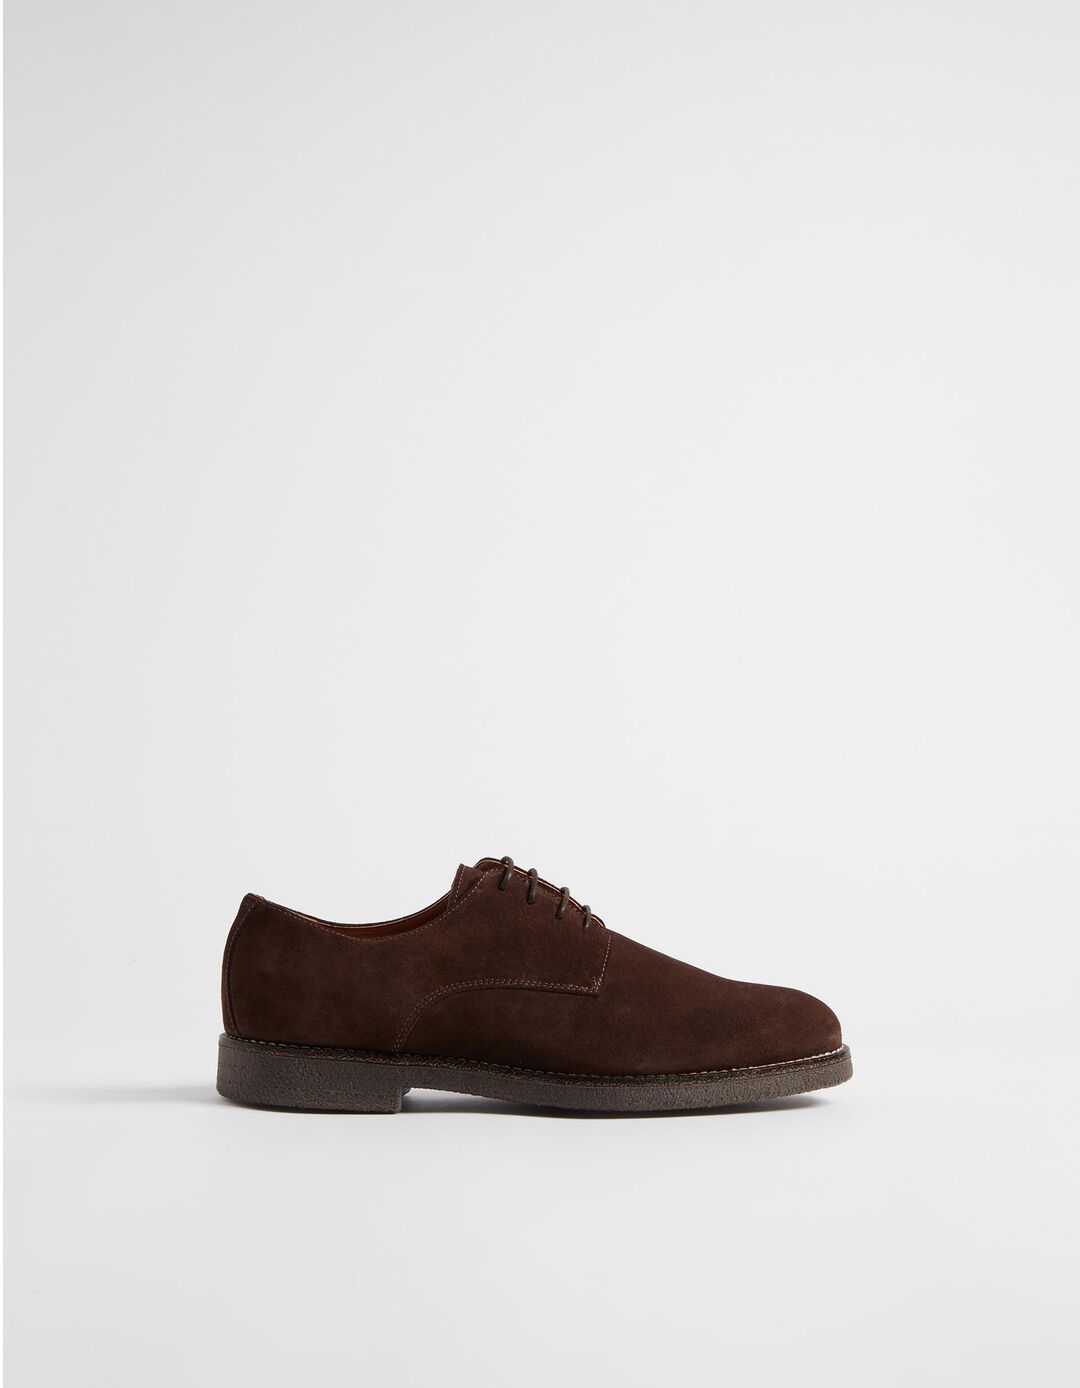 Suede Shoes, Men, Brown